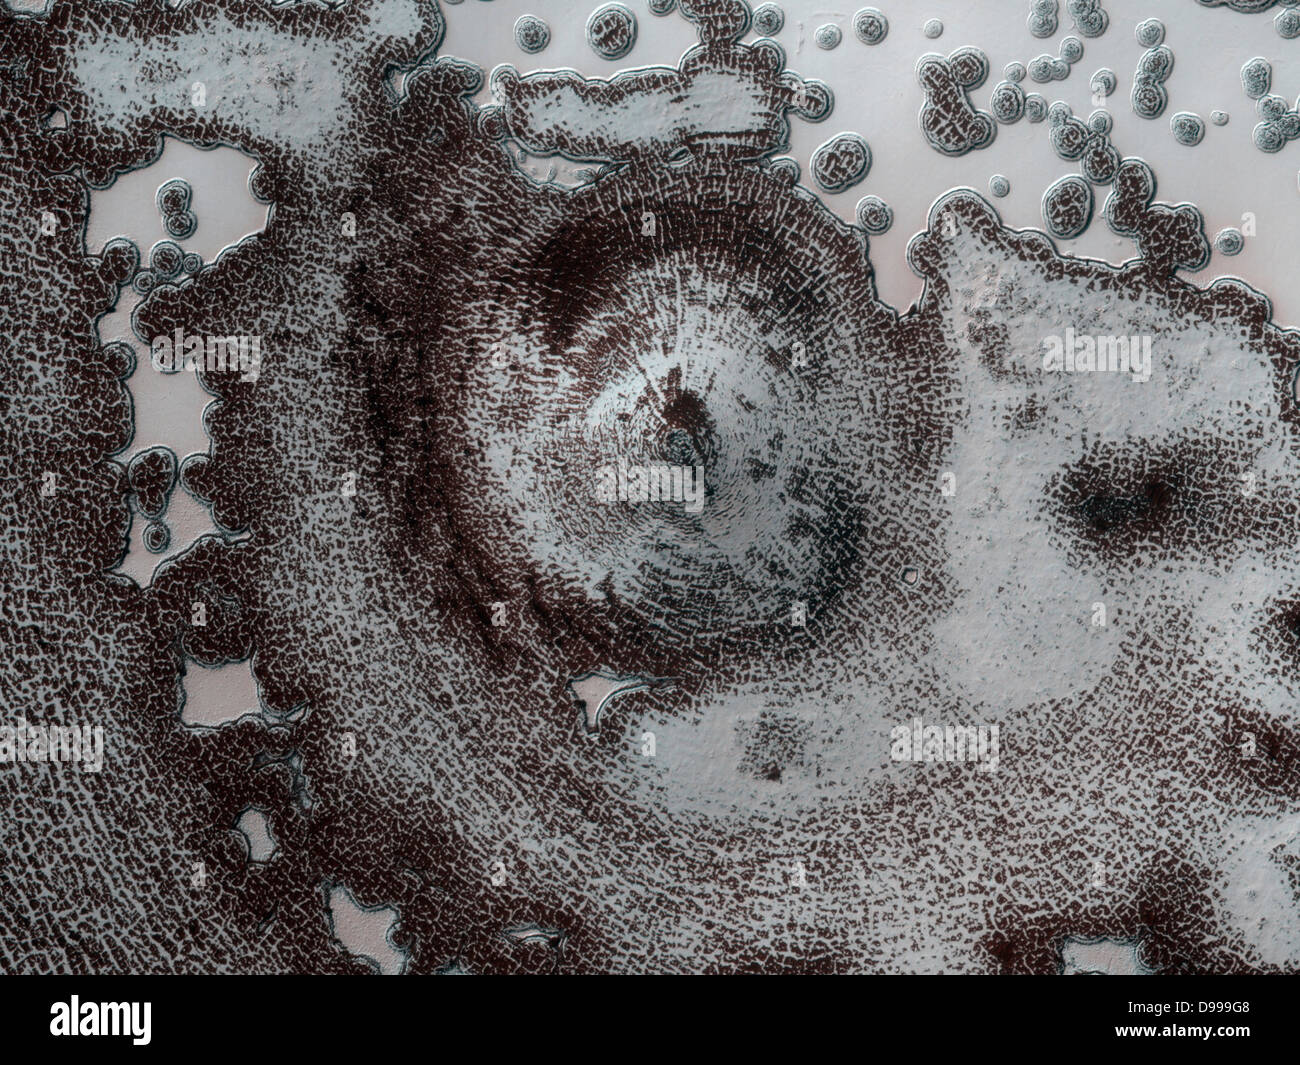 Dieses 4 Kilometer Durchmesser Funktion in der Nähe der South Polar verbleibenden Sechskantschrauben in der Mariner 9 und Viking Orbiter Bilder in den 70er Jahren erkannt wurde, aber sein Ursprung konnte nicht abgeleitet werden. Stockfoto